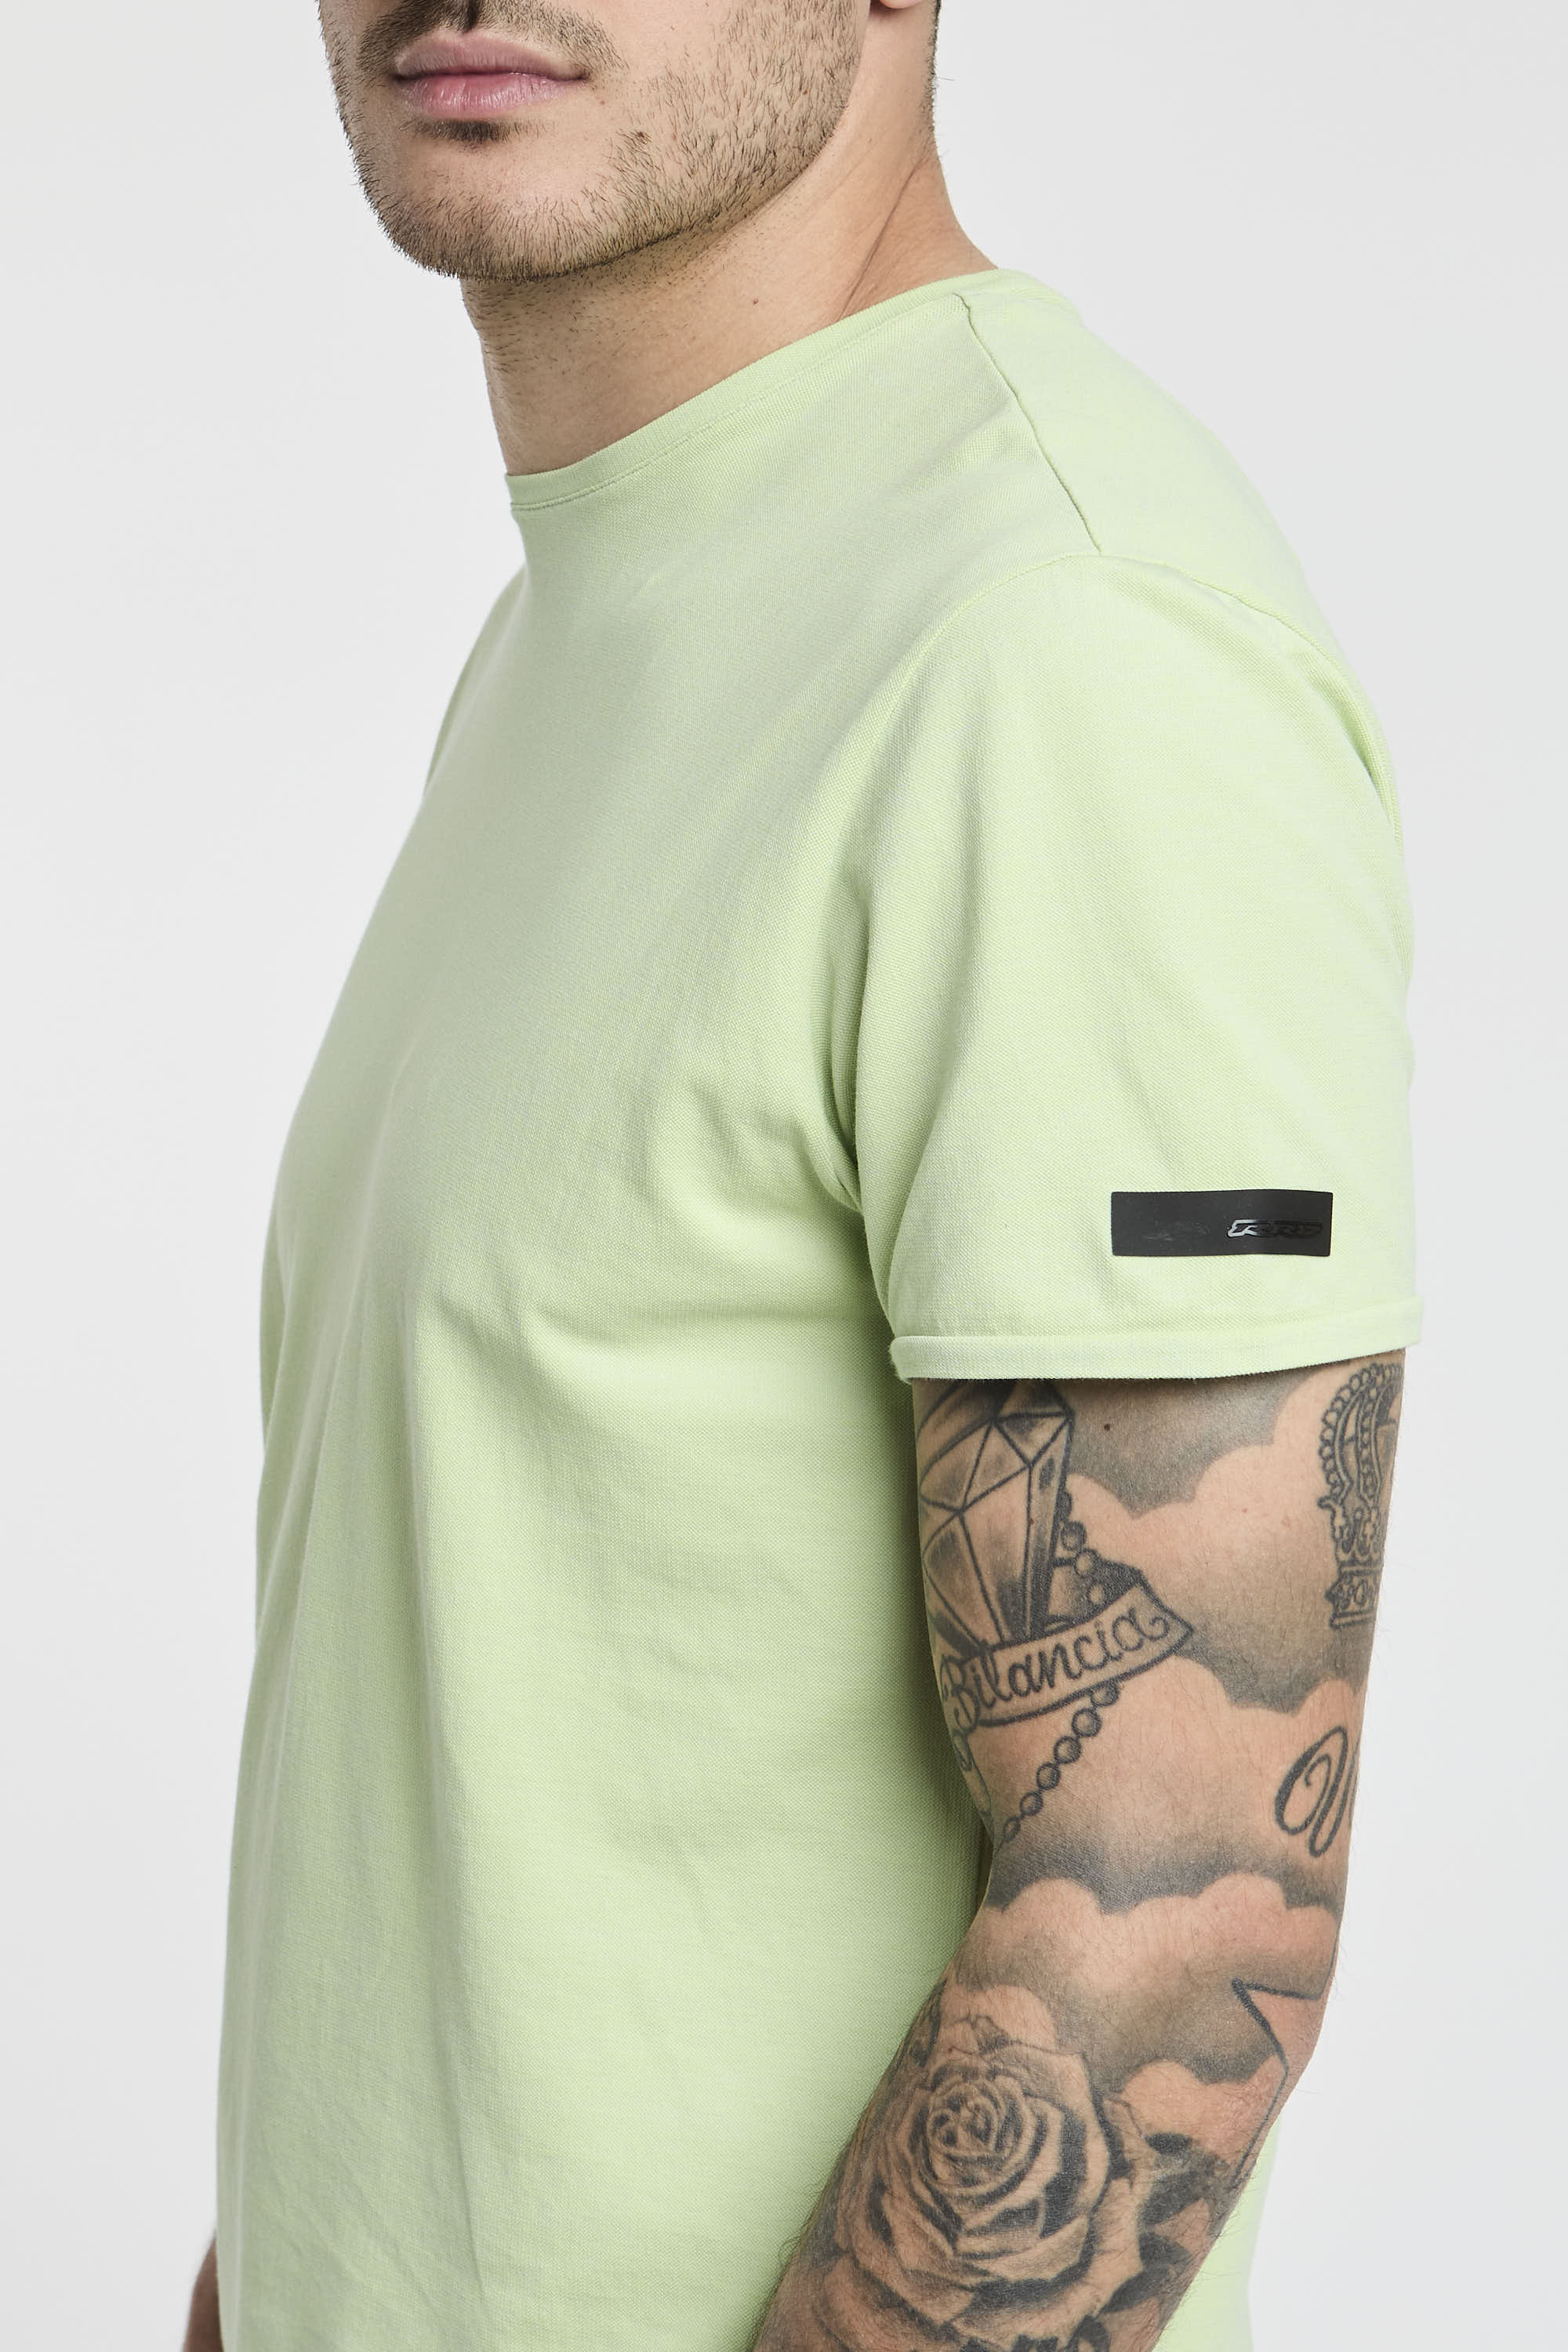 RRD T-Shirt Doticon Piquet Elastisch Baumwolle/Nylon Farbe Minze-5